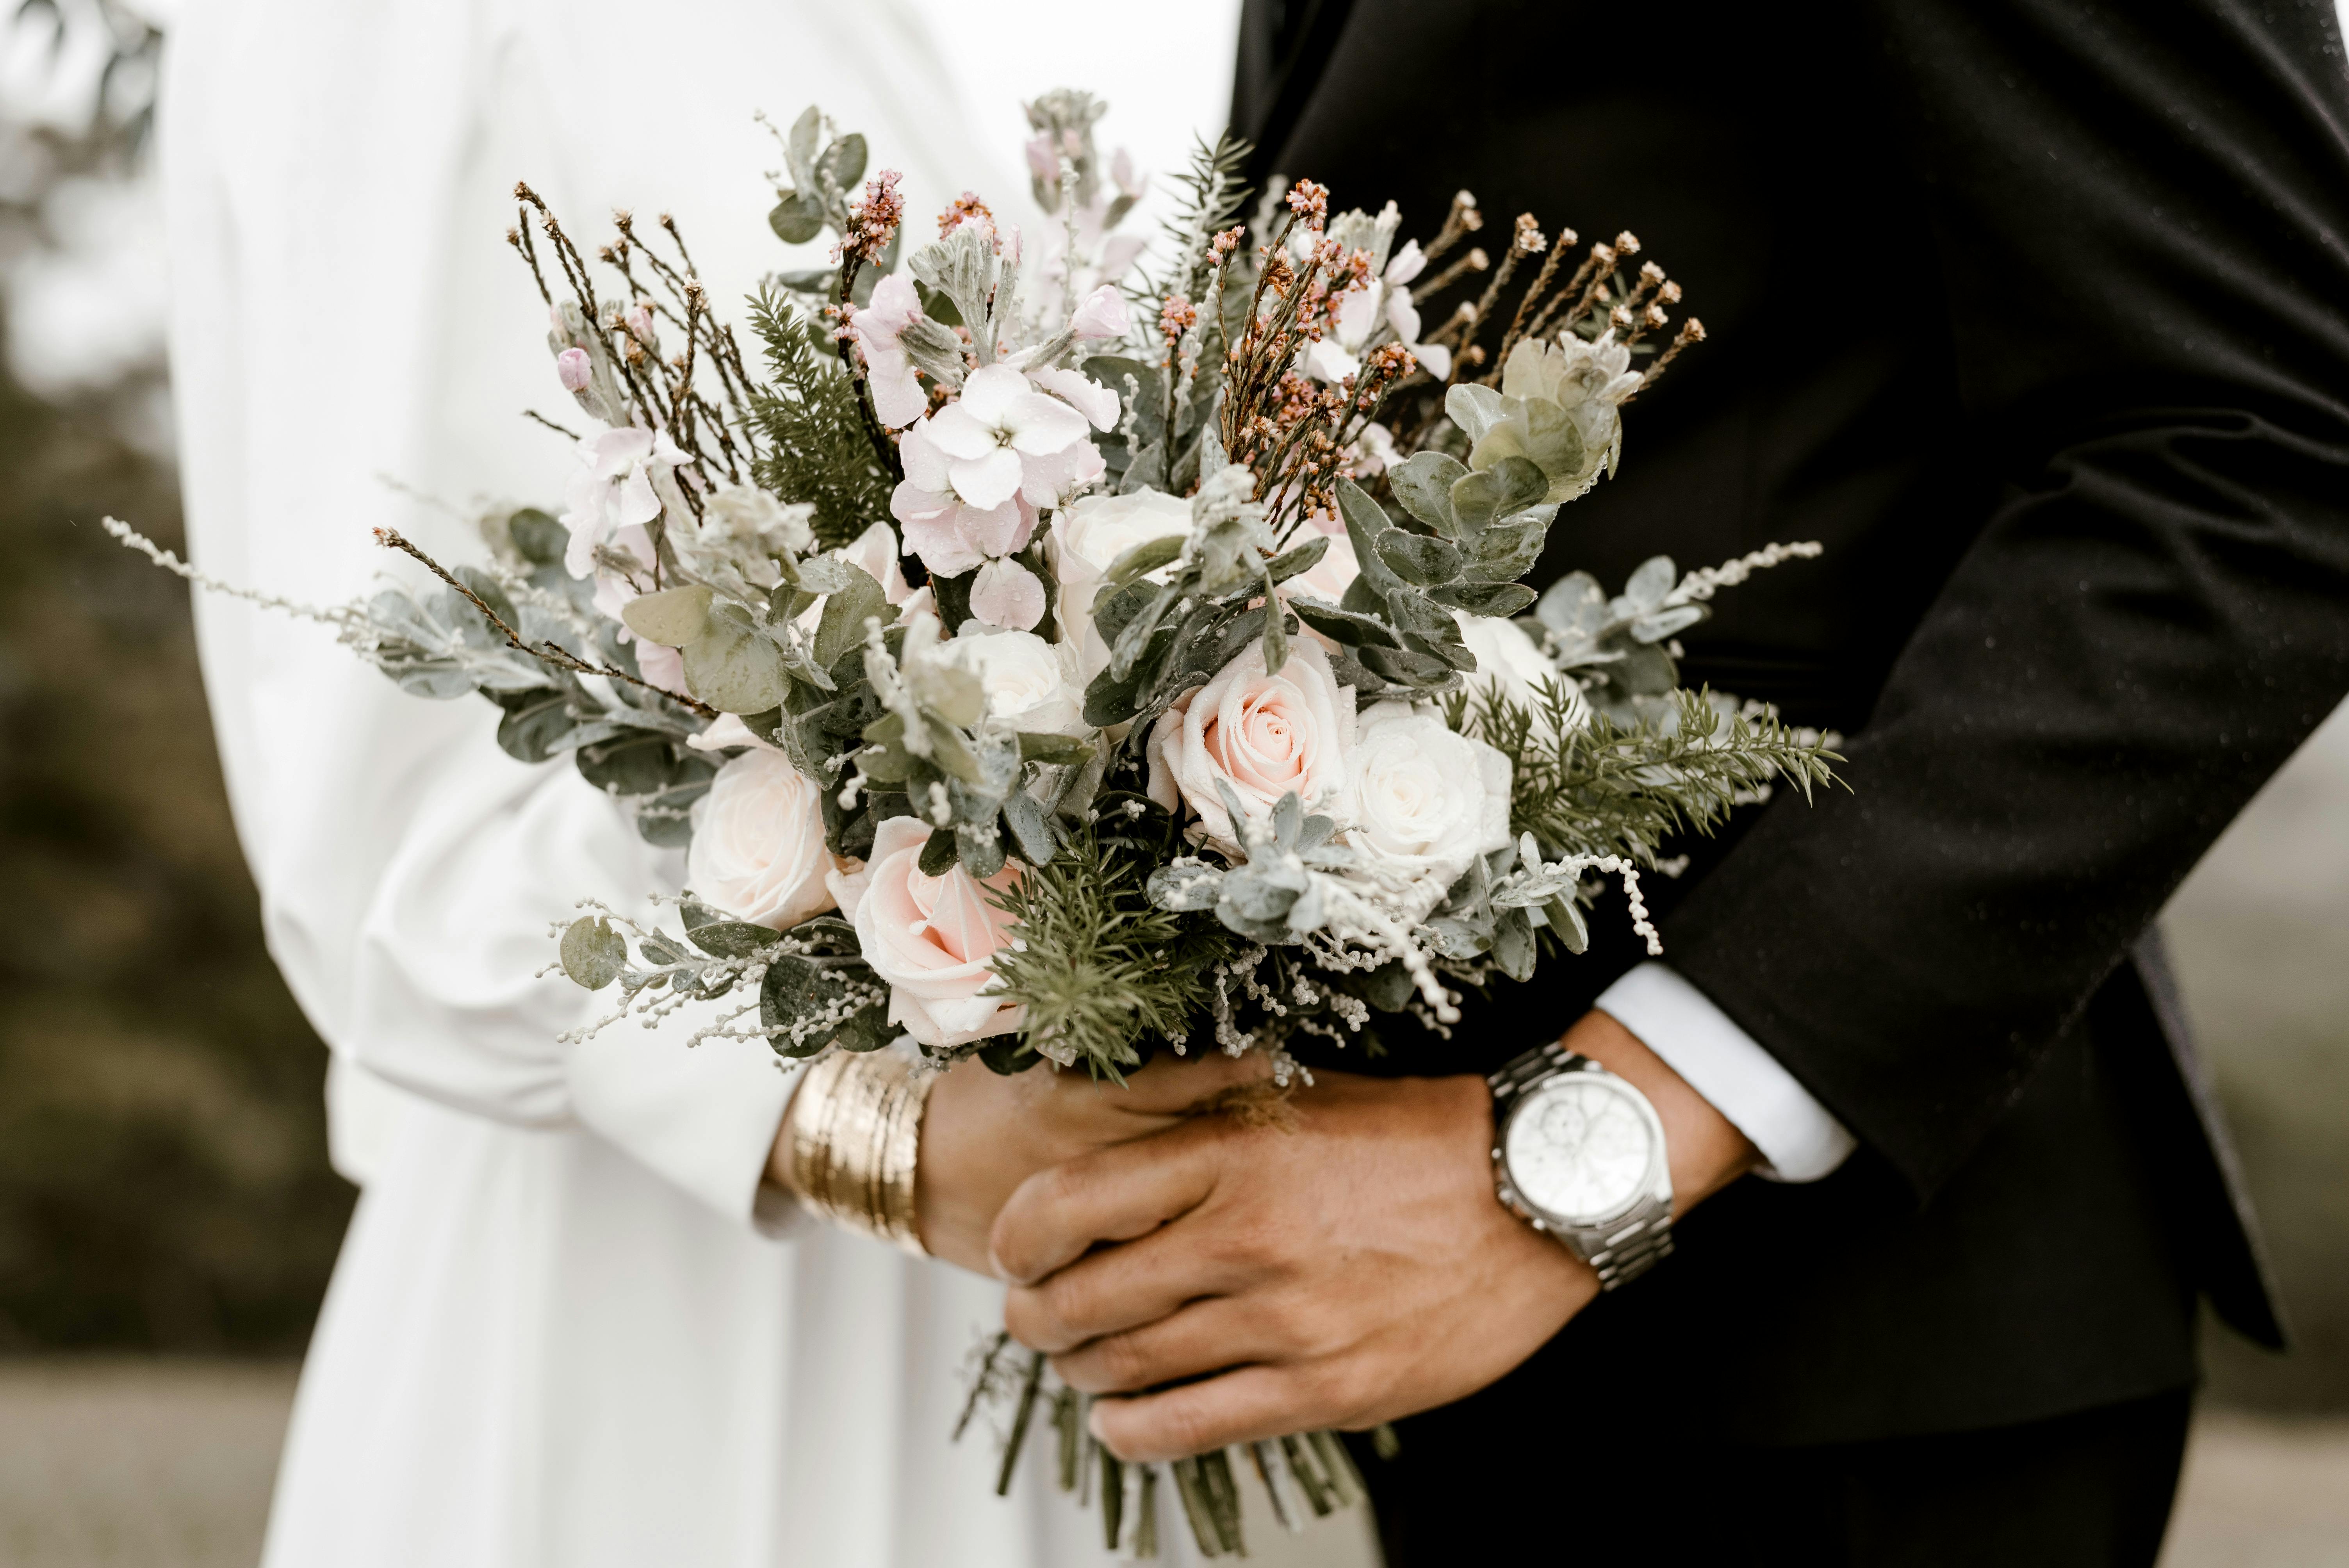 Le marié et la mariée dansent en tenant un bouquet de mariage | Source : Pexels